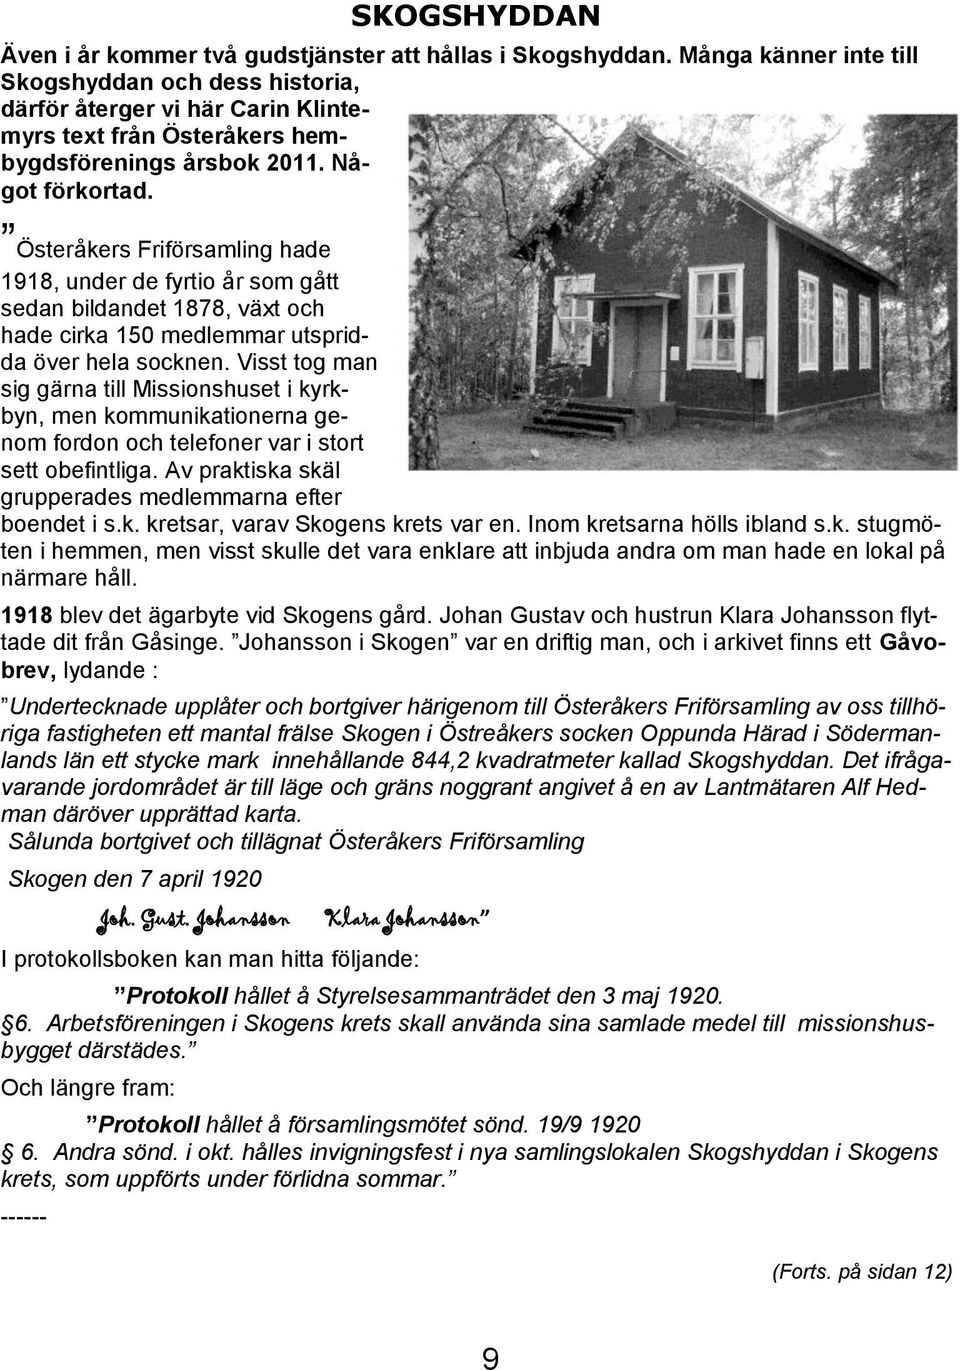 Österåkers Friförsamling hade 1918, under de fyrtio år som gått sedan bildandet 1878, växt och hade cirka 150 medlemmar utspridda över hela socknen.